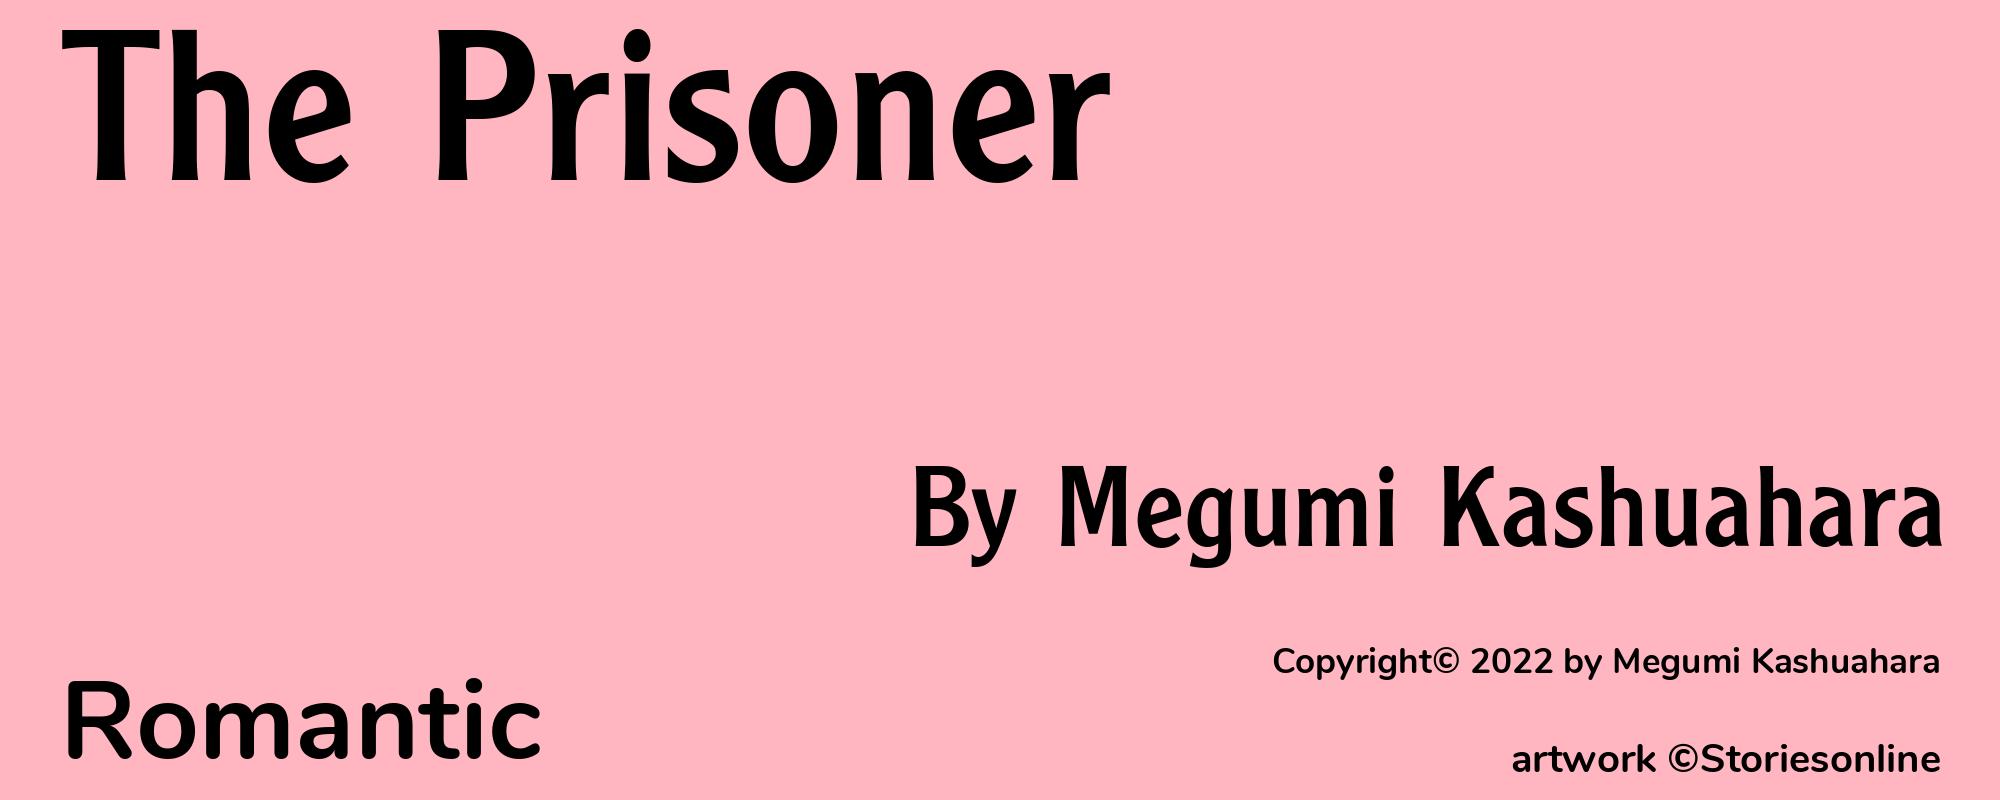 The Prisoner - Cover